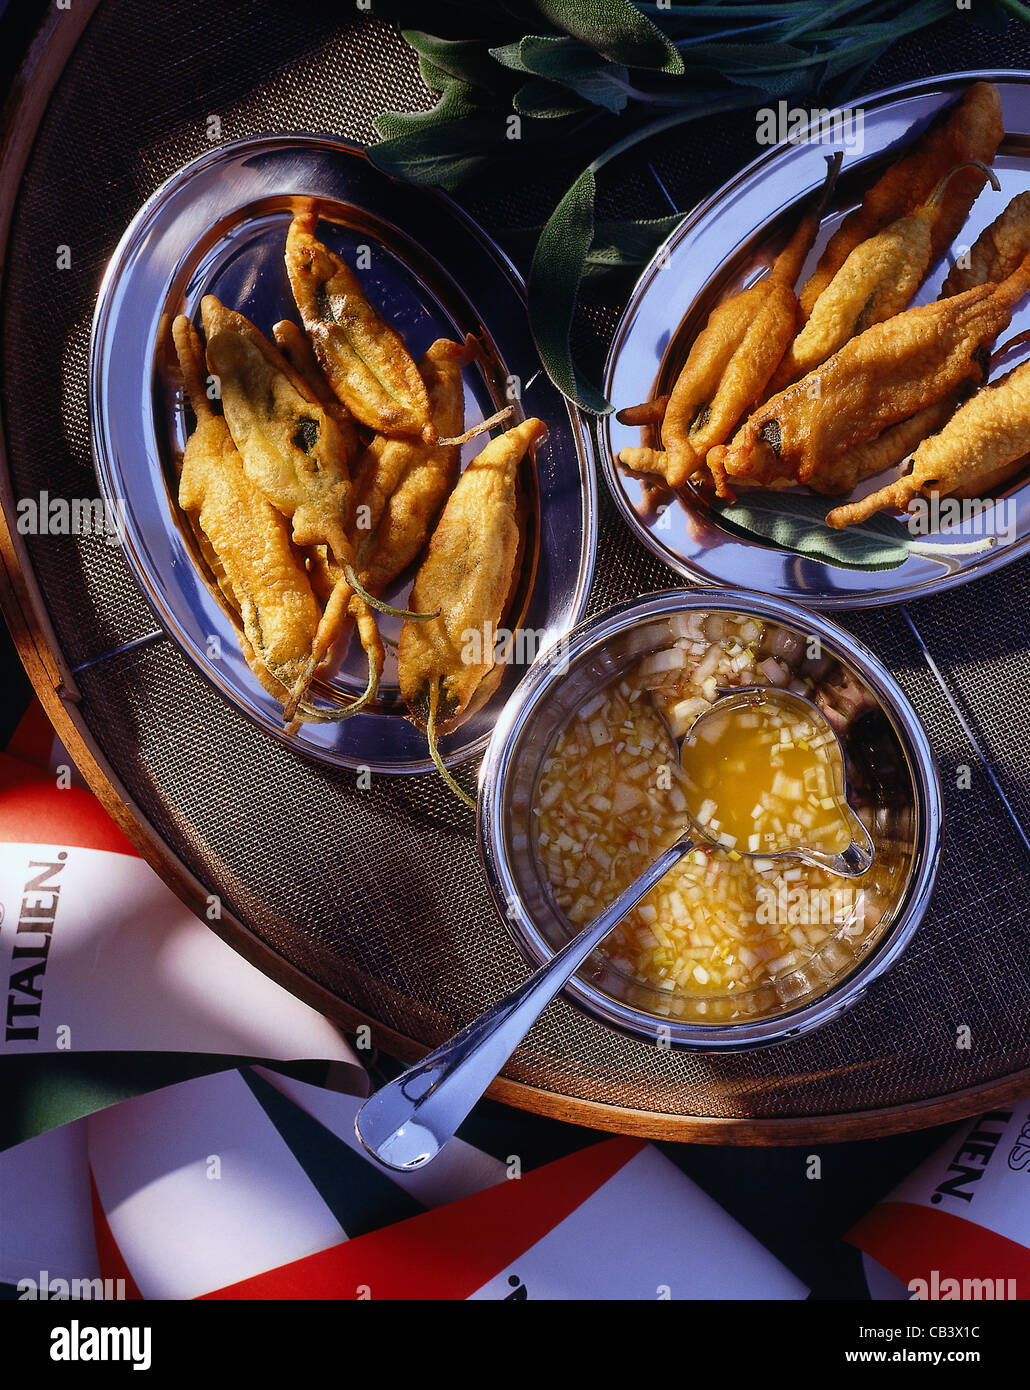 Fritte di foglie di salvia (foglie di salvia fritte) con arancia marinata Foto Stock